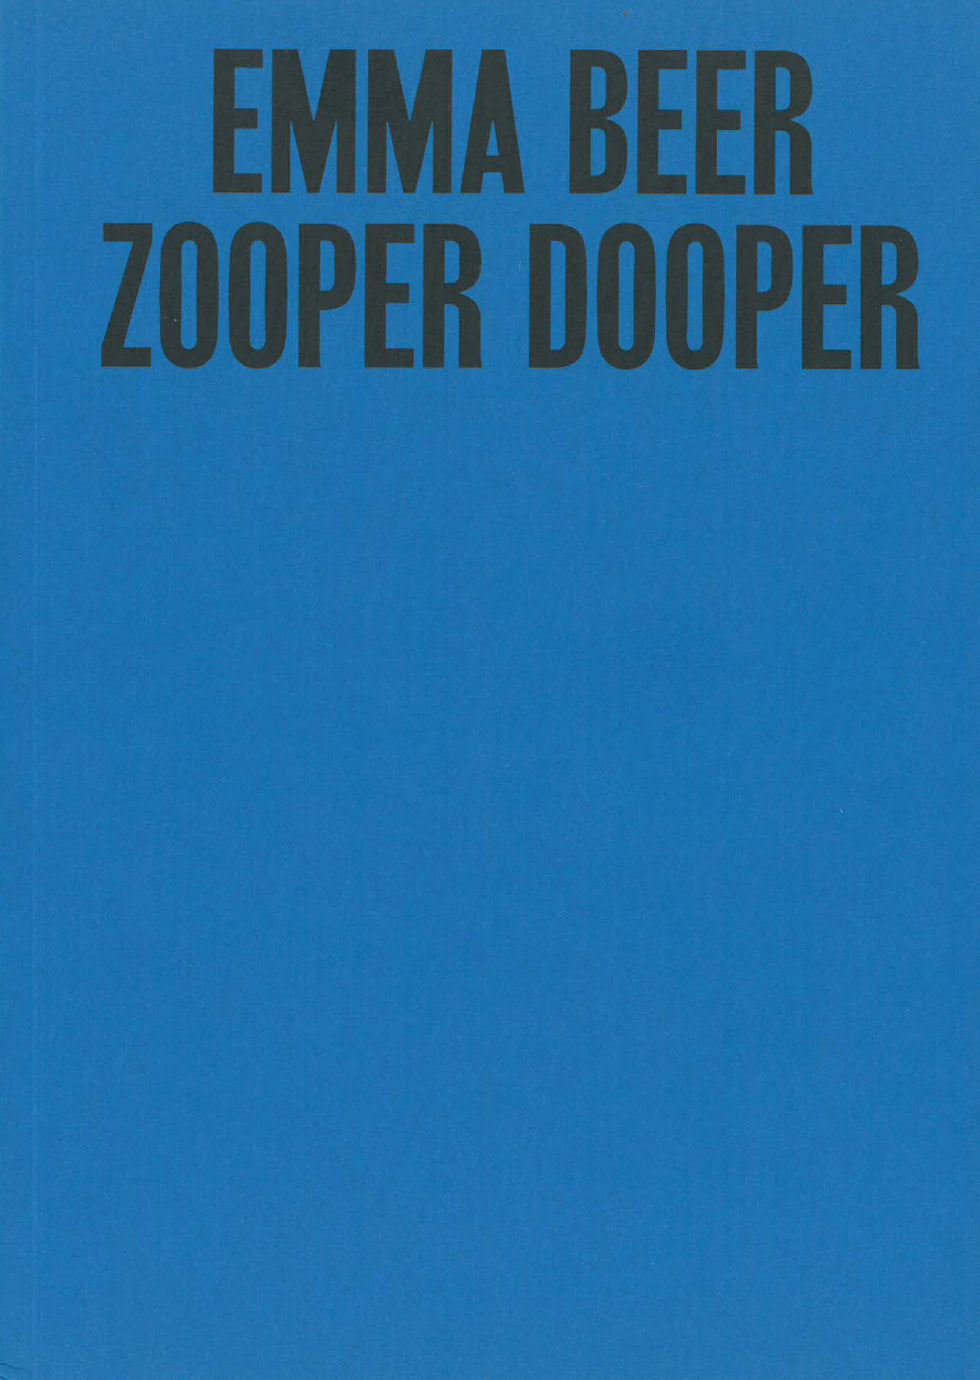 Emma Beer: Zooper Dooper cover